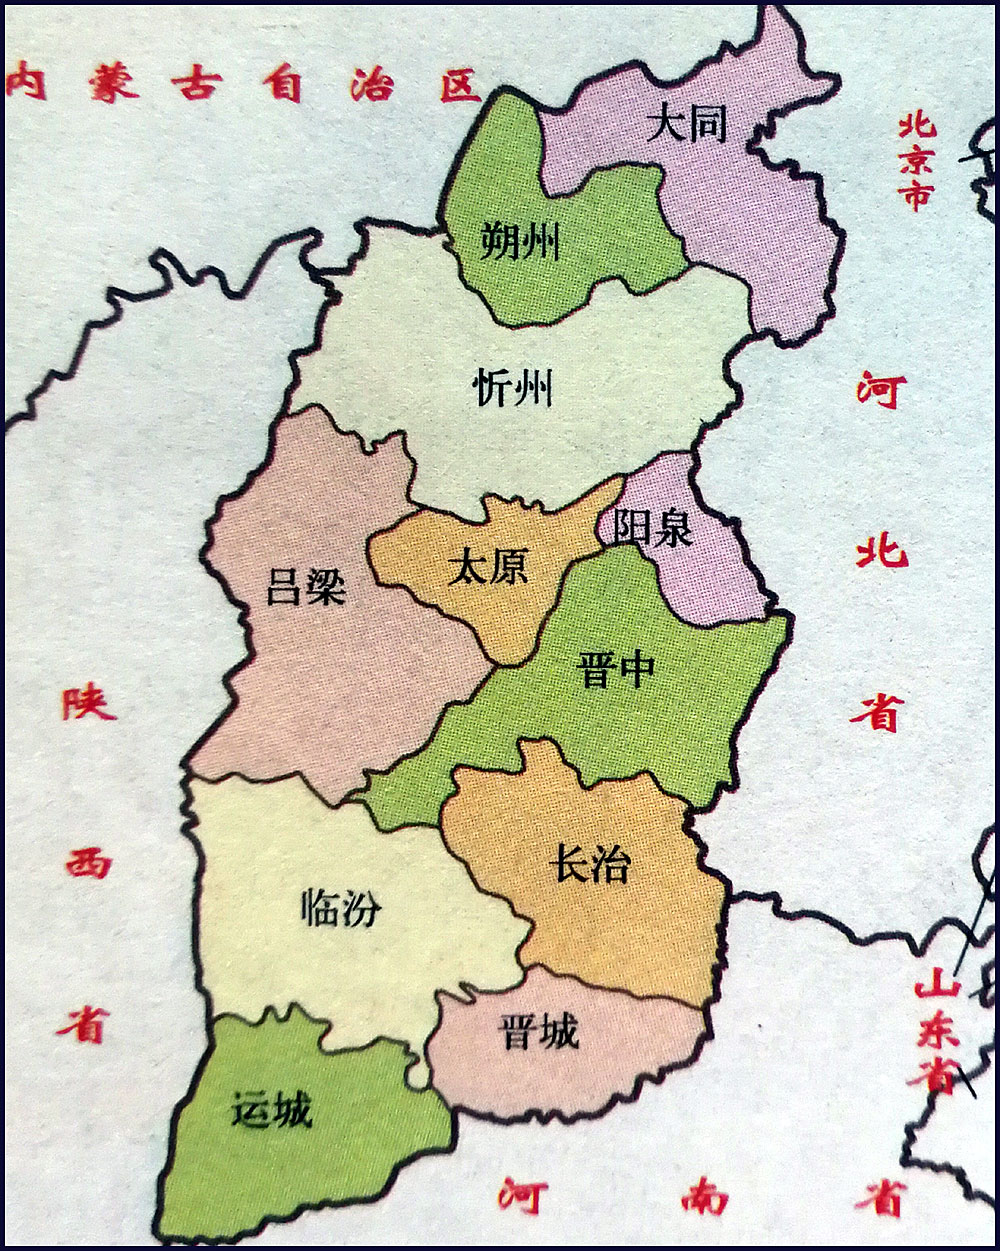 山西省地图各市县图片